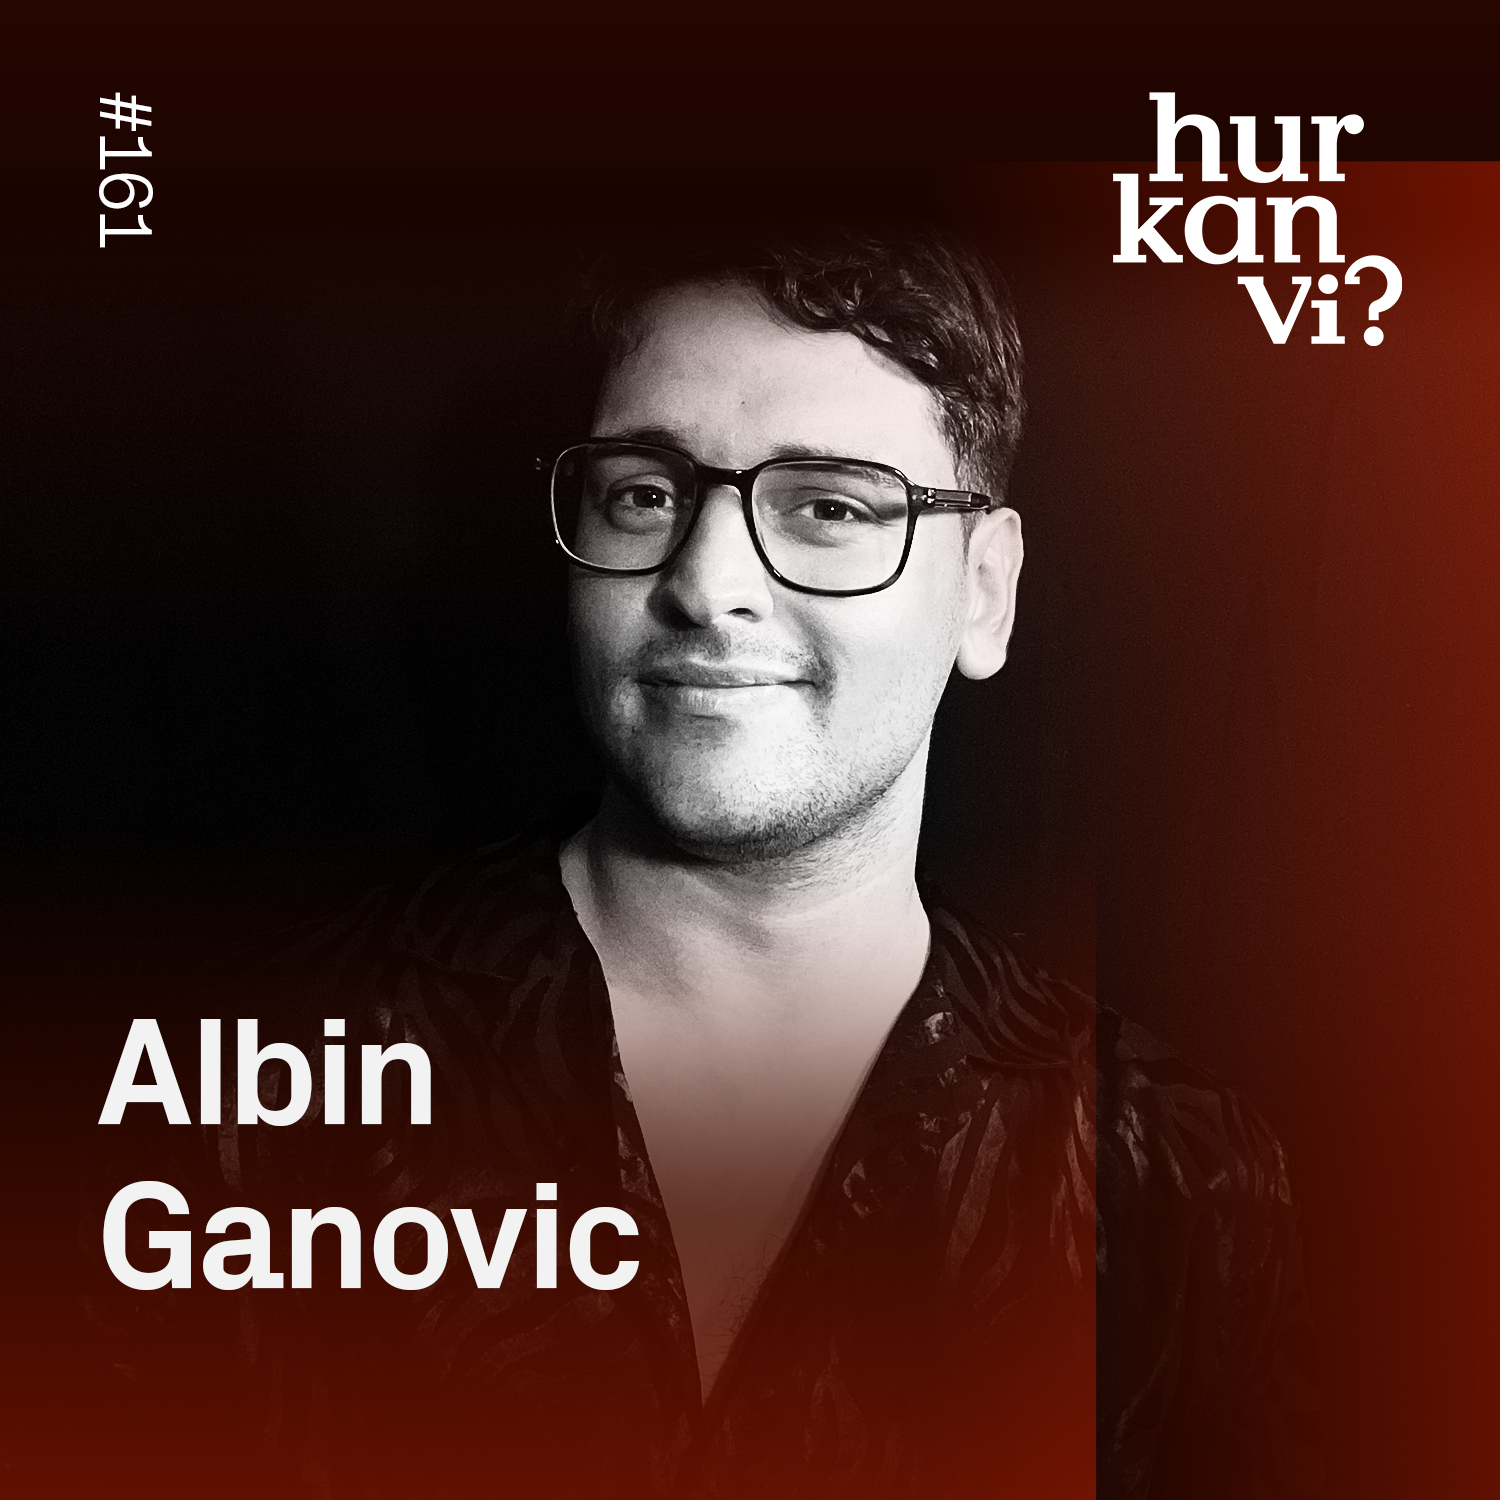 161: Varje gång du haft oskyddat sex som gay är det förknippat med döden – Albin Ganovic